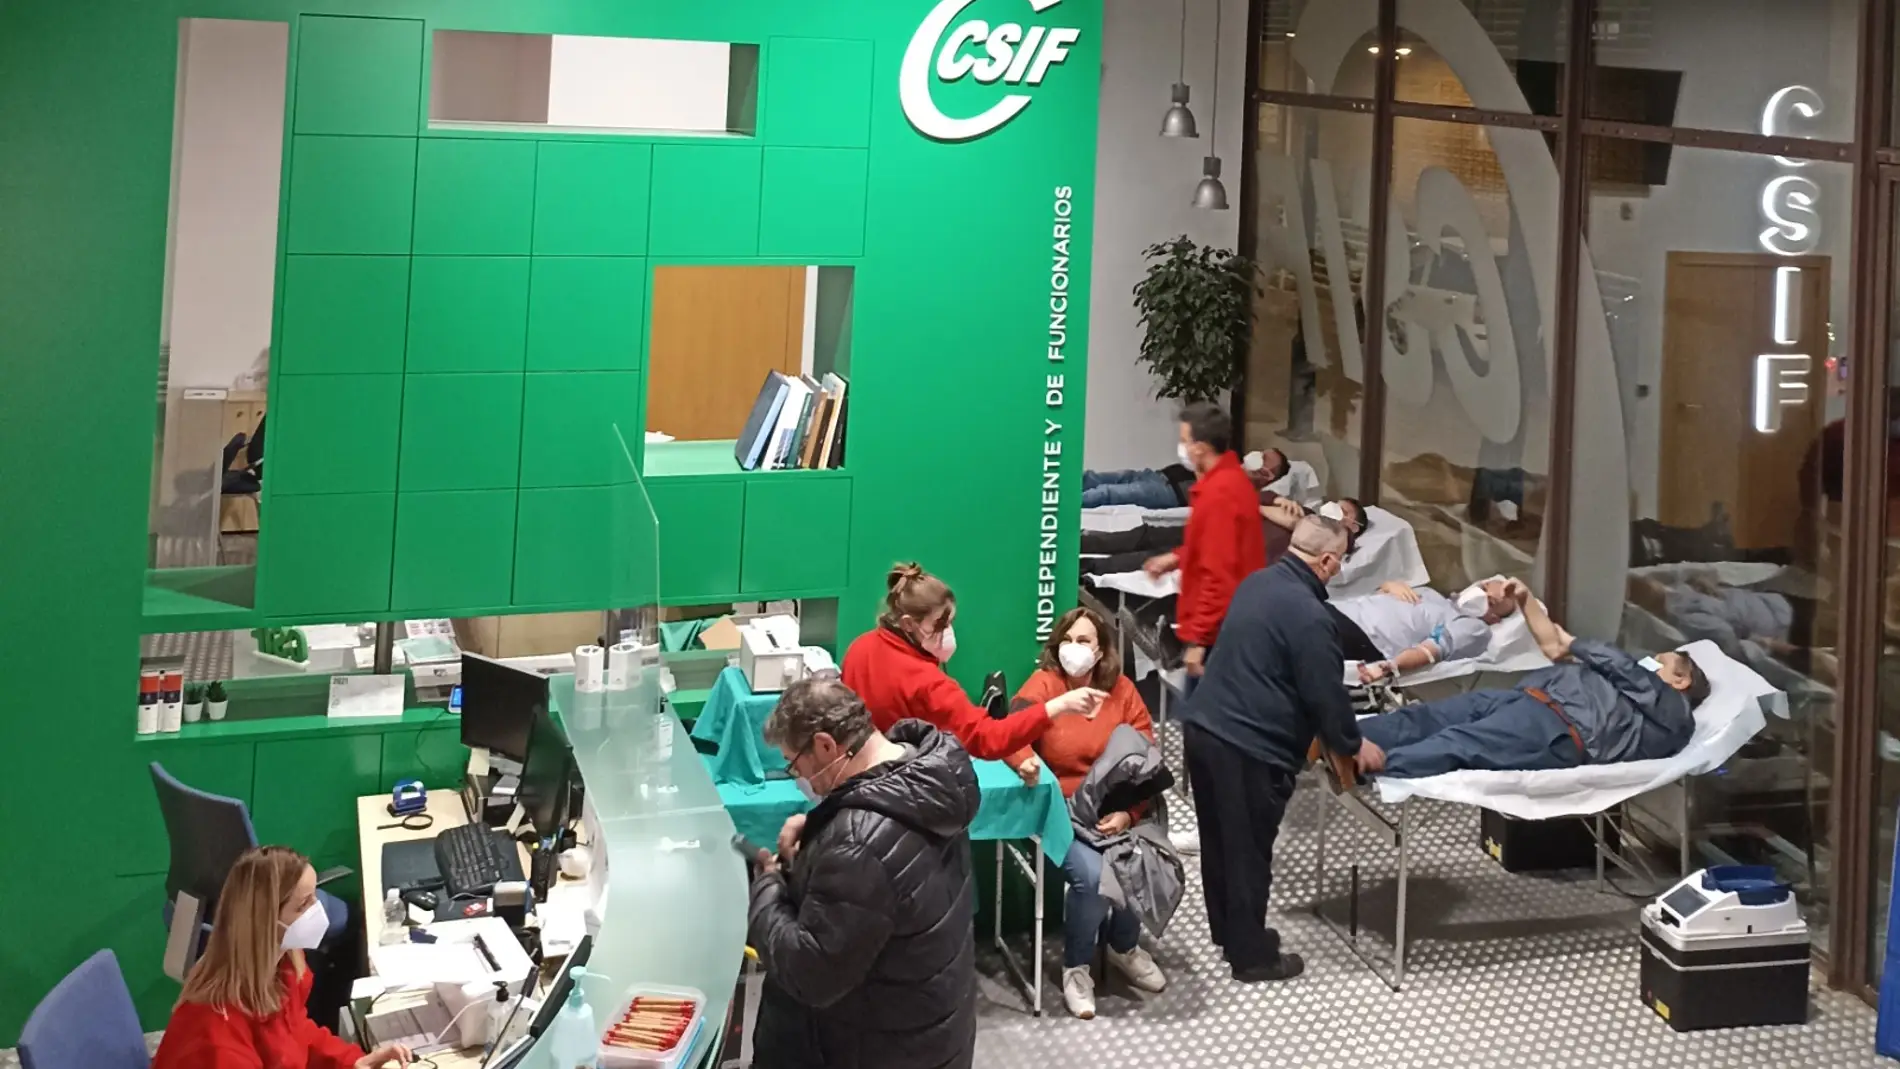 CSIF colabora con el Centro de Transfusión de la Comunitat Valenciana con una jornada solidaria de donación de sangre en su sede.